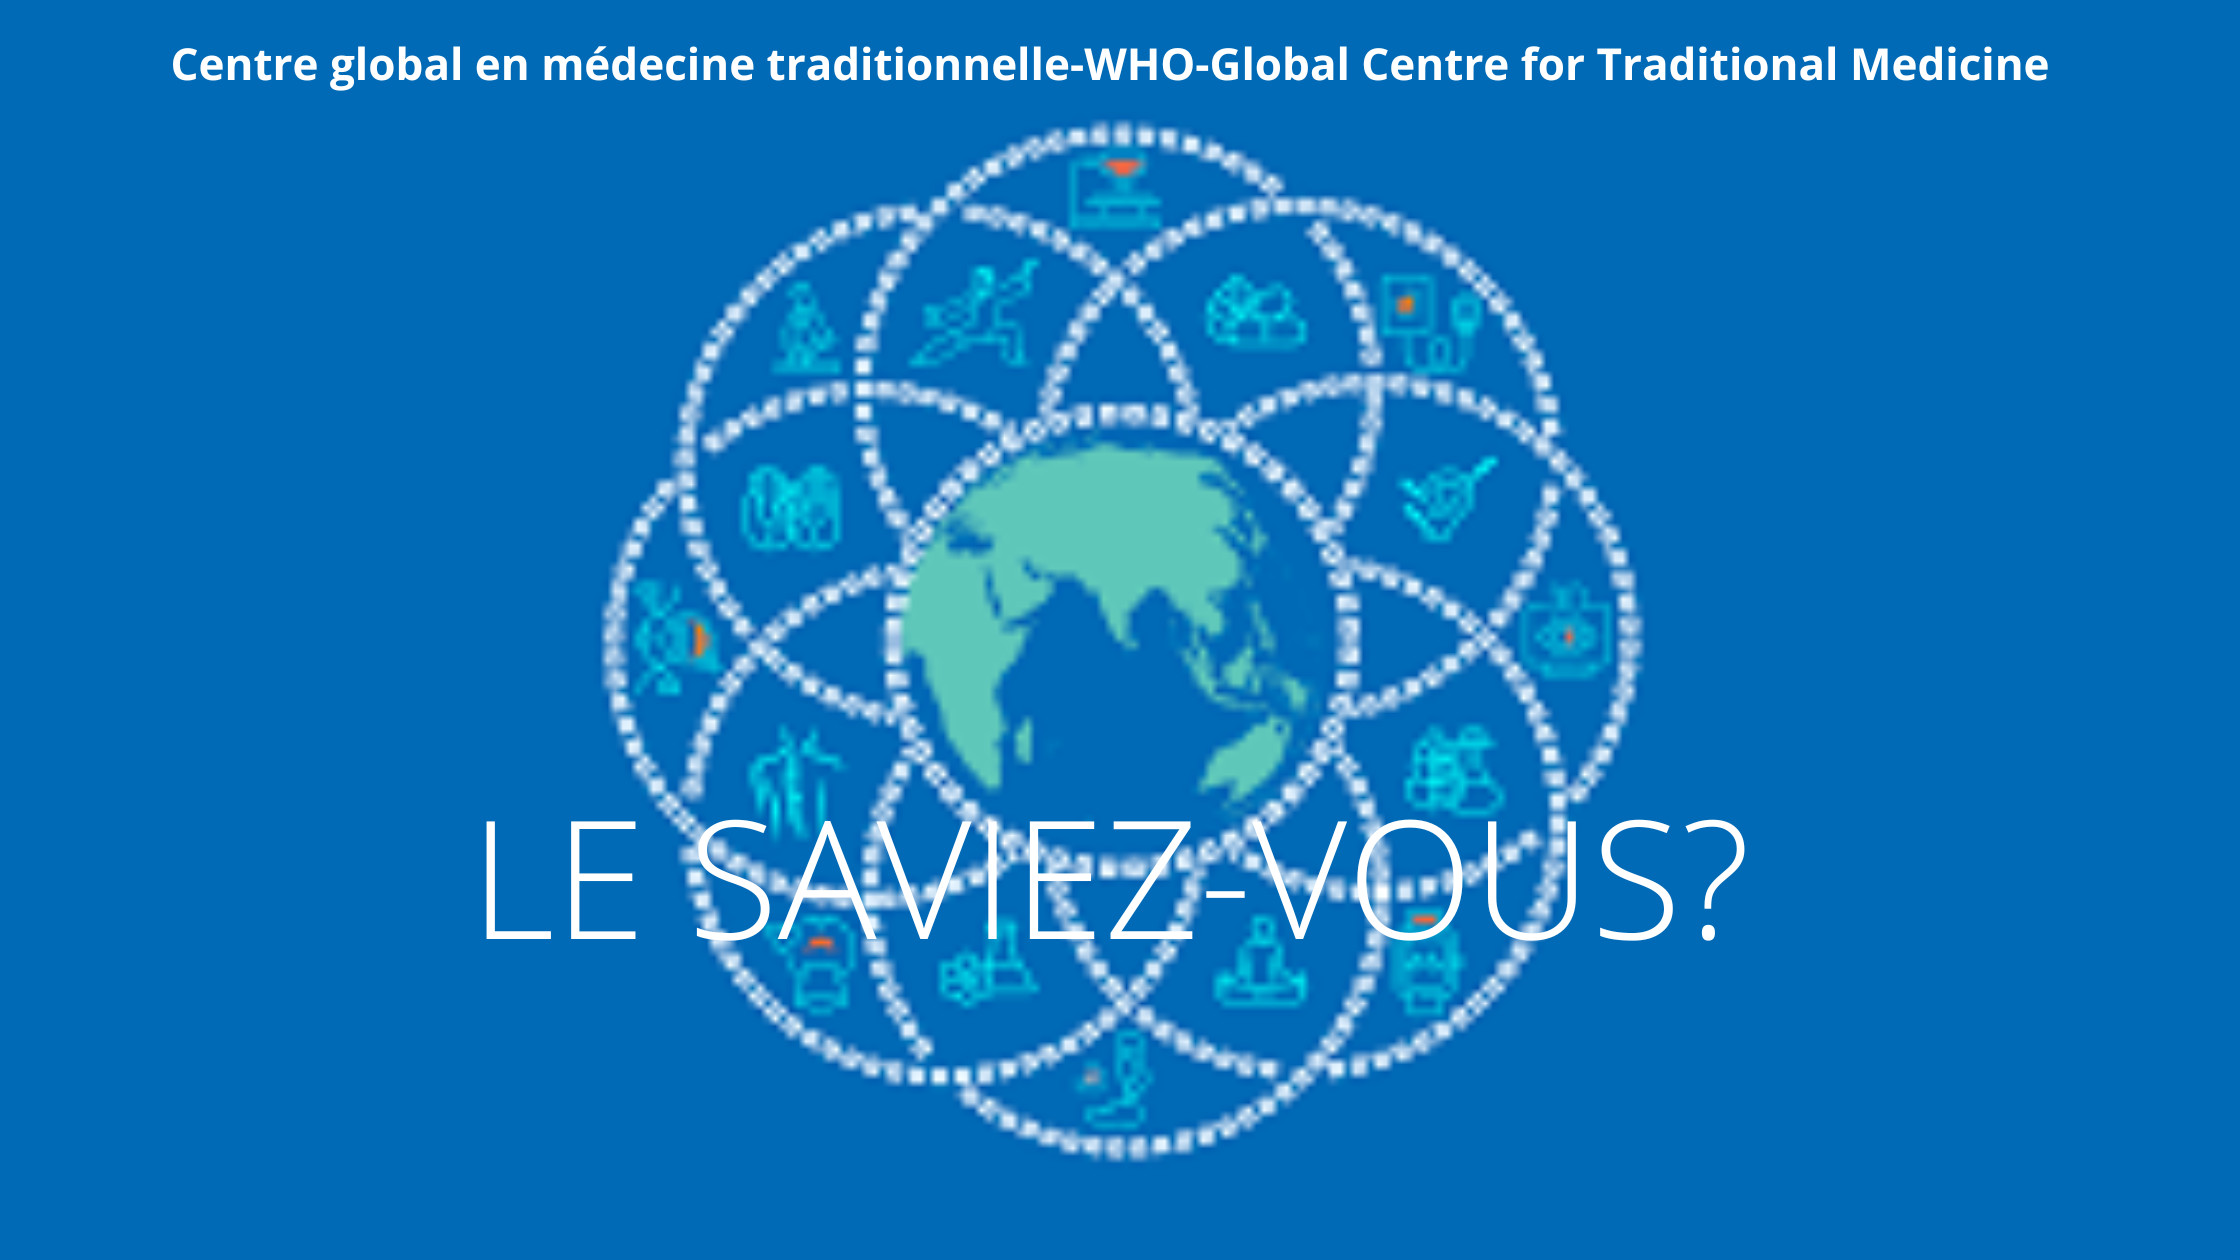 Le saviez-vous? L’OMS crée en Inde le Centre mondial de médecine traditionnelle